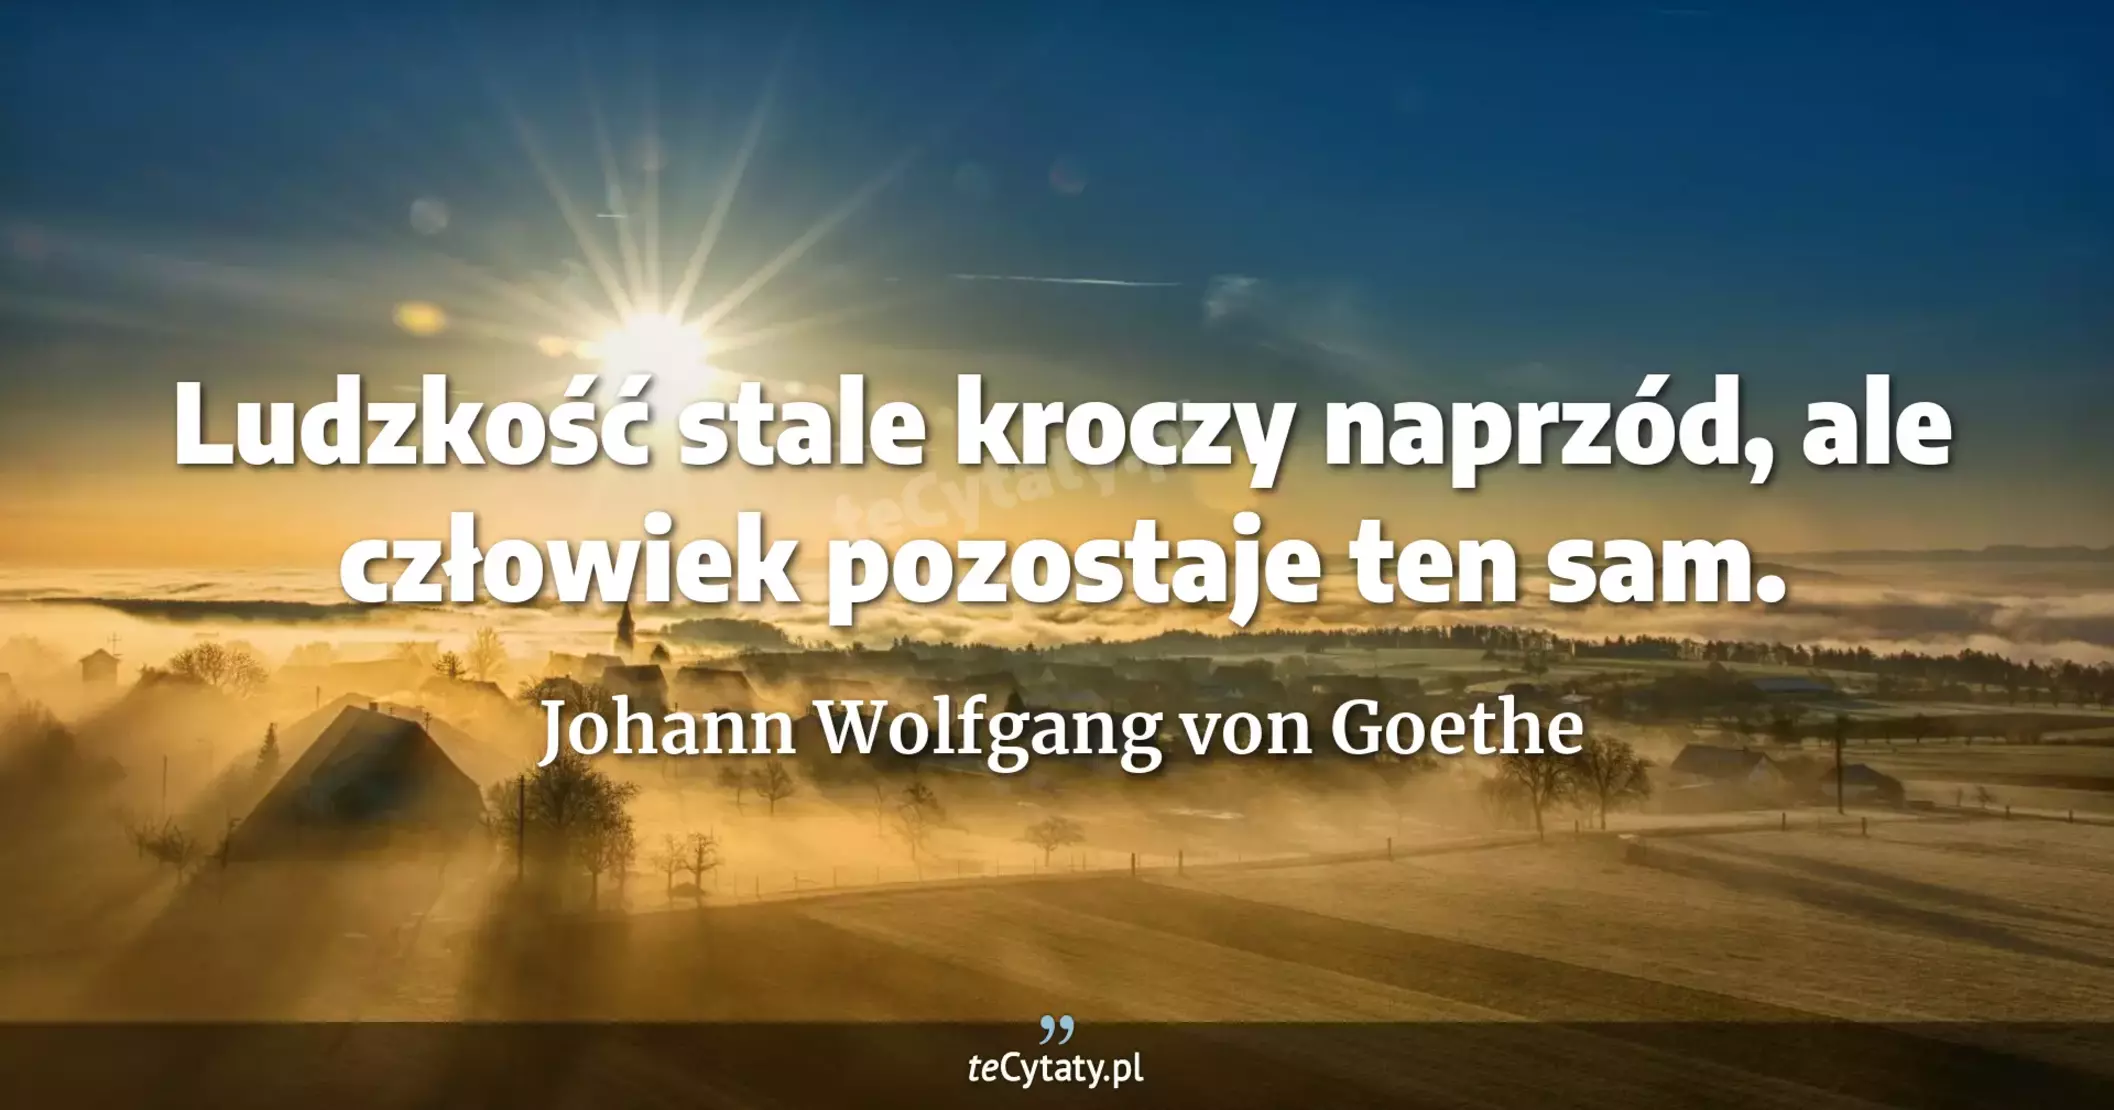 Ludzkość stale kroczy naprzód, ale człowiek pozostaje ten sam. - Johann Wolfgang von Goethe